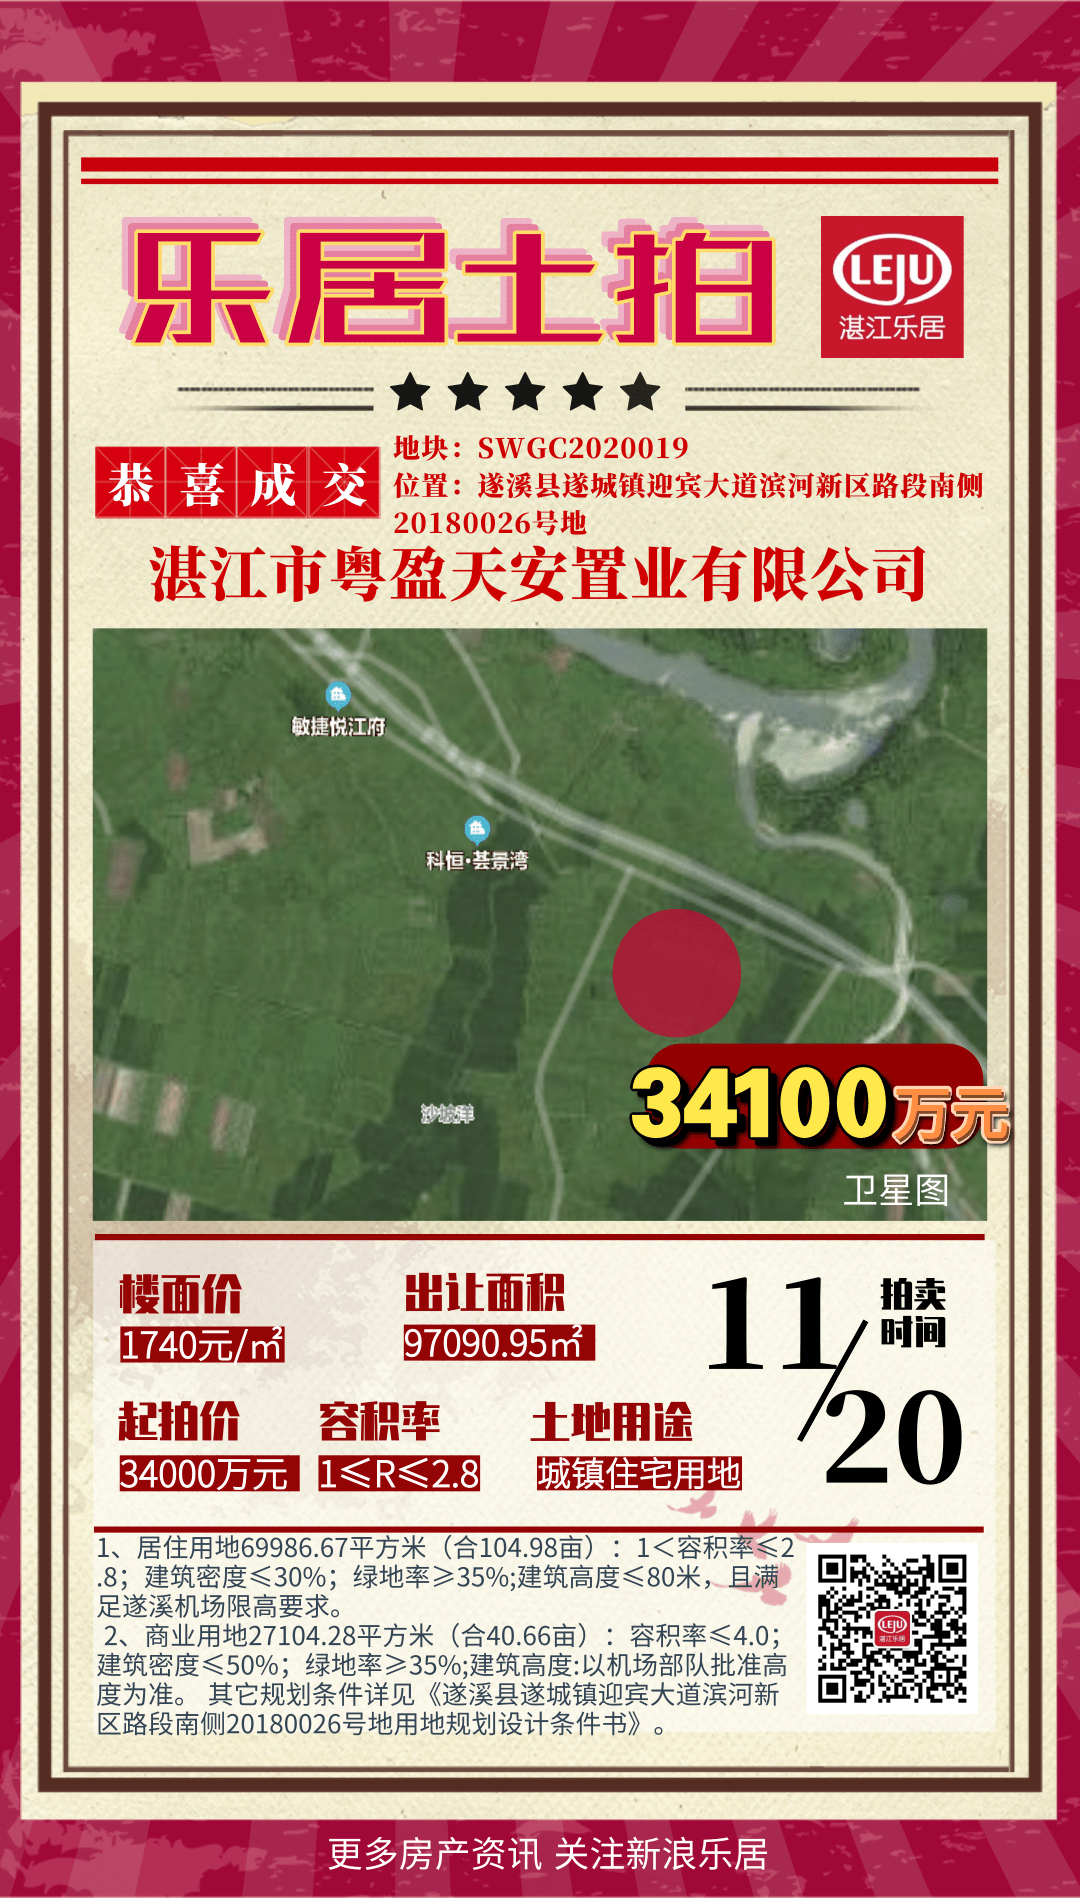 土拍播报！遂溪县城镇住宅用地3.41亿拍出！